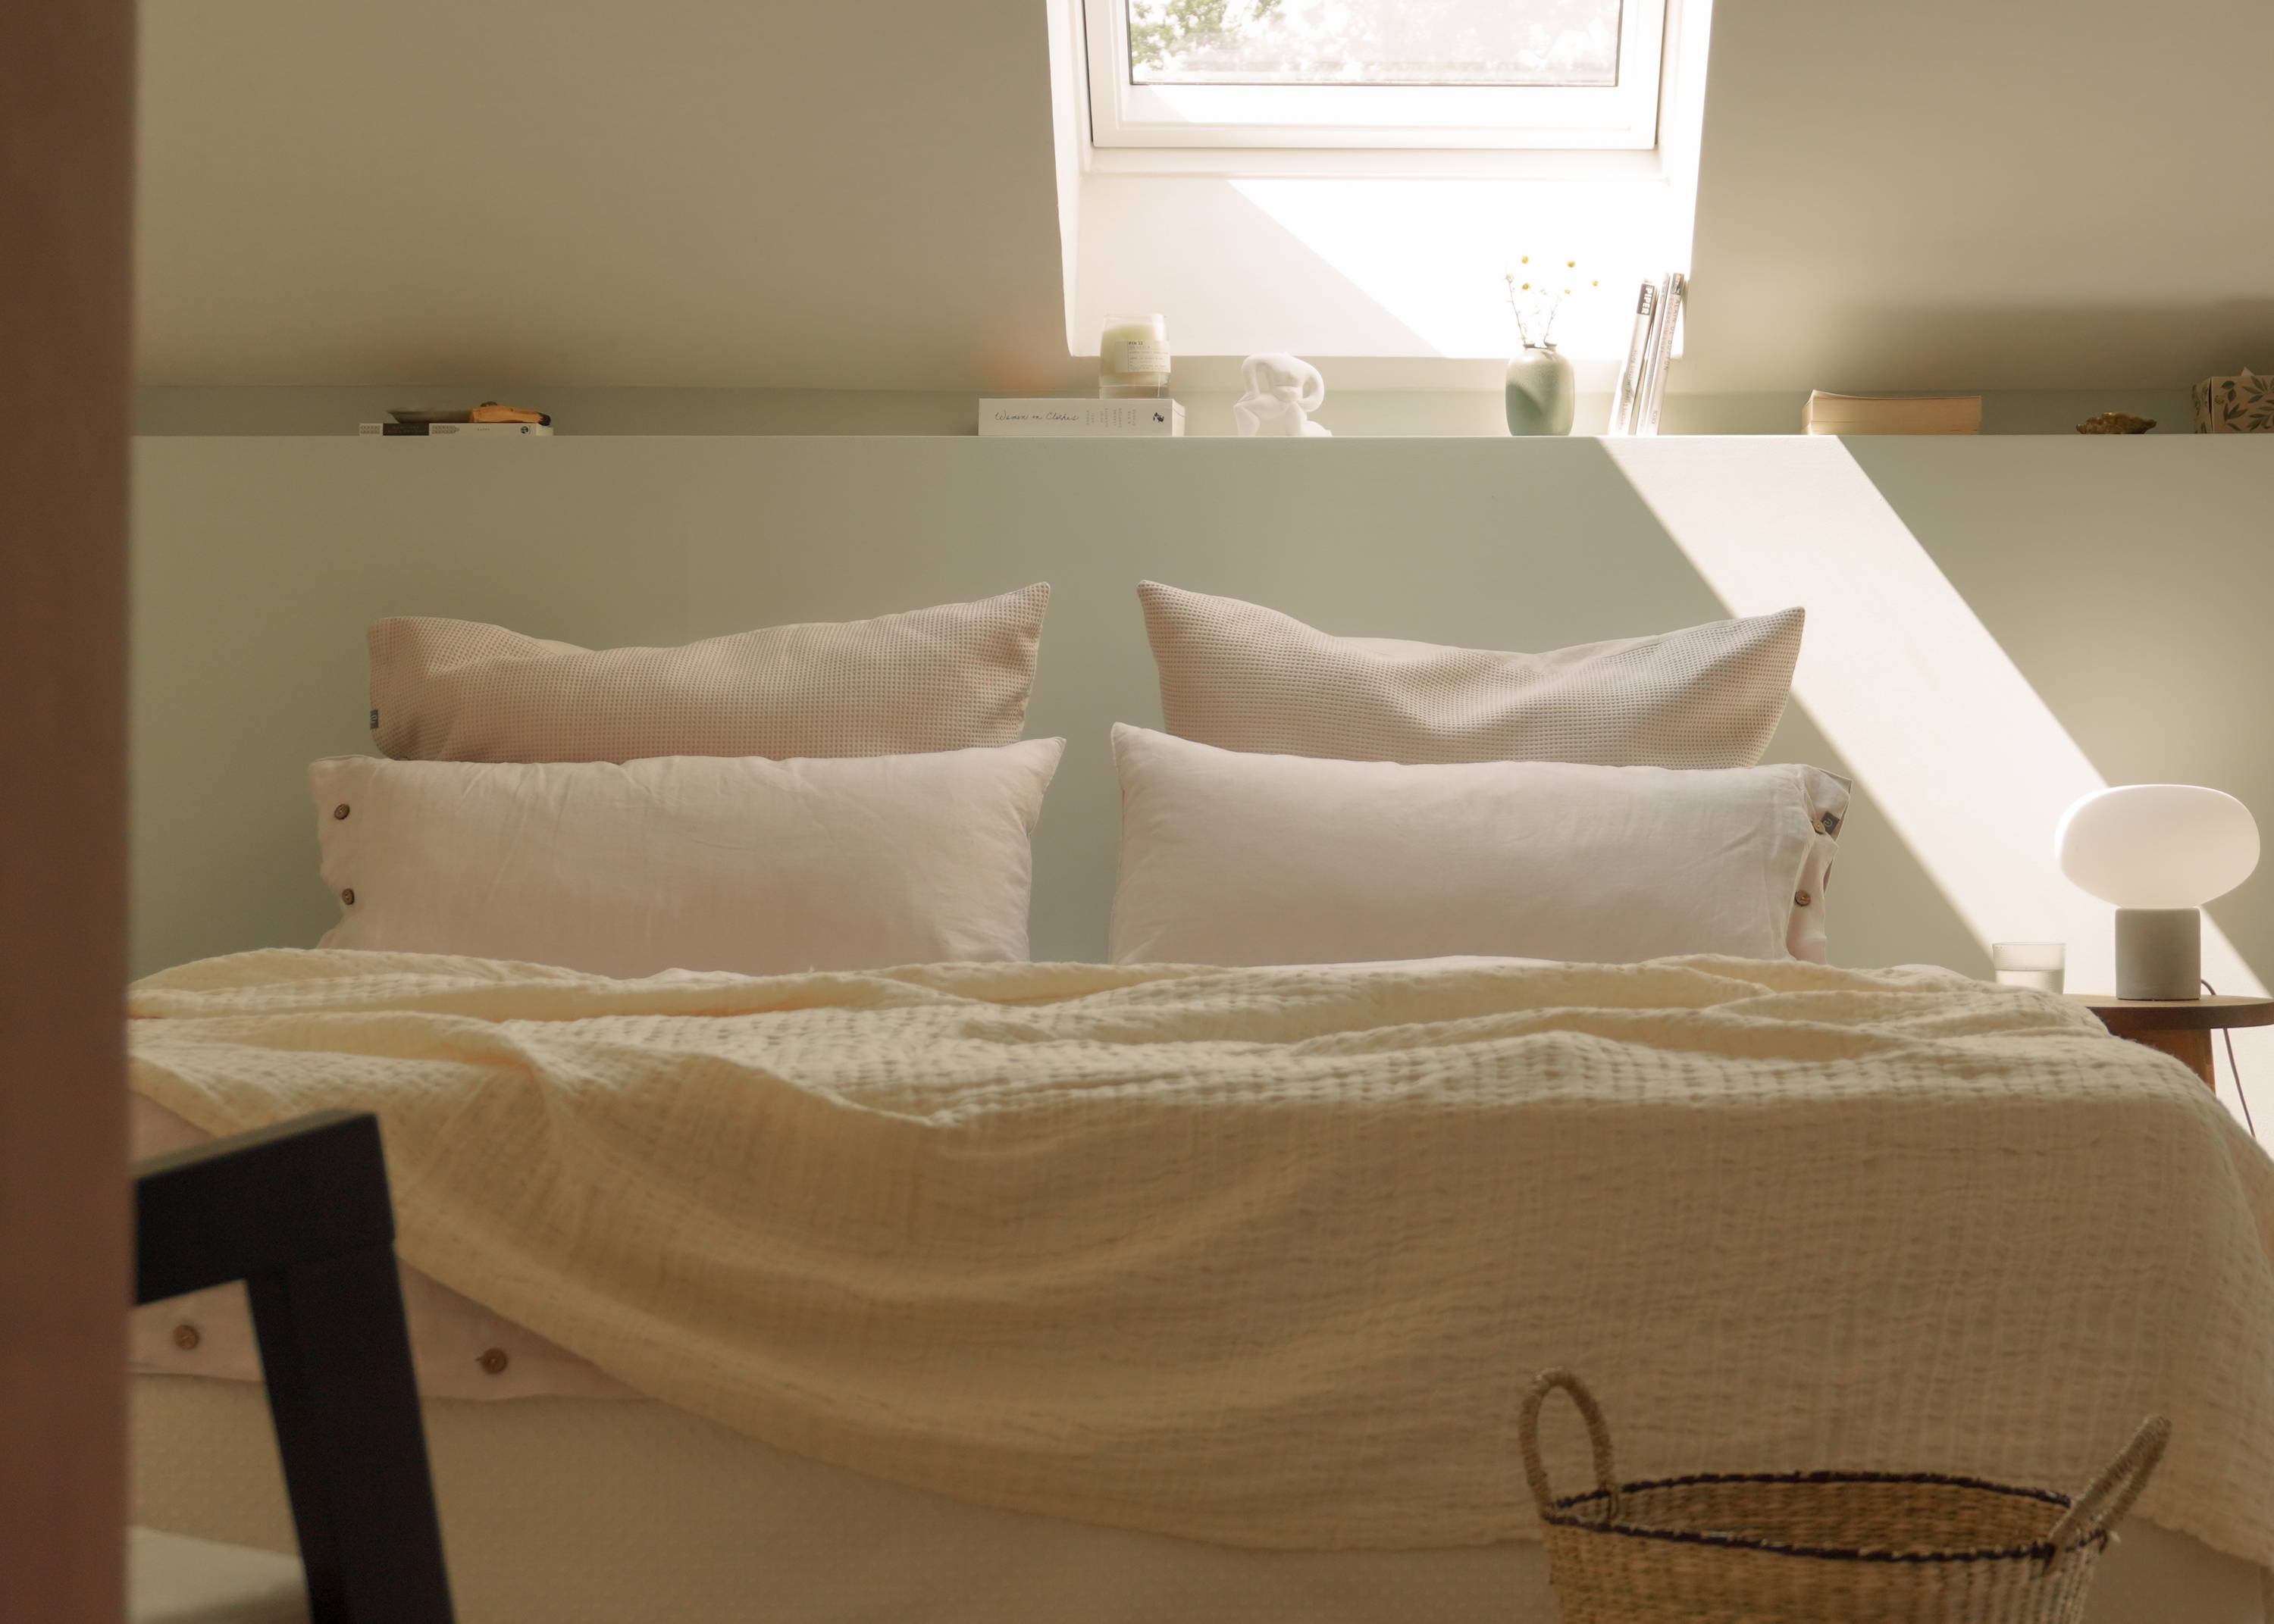 Ein Bett mit einer Tagesdecke